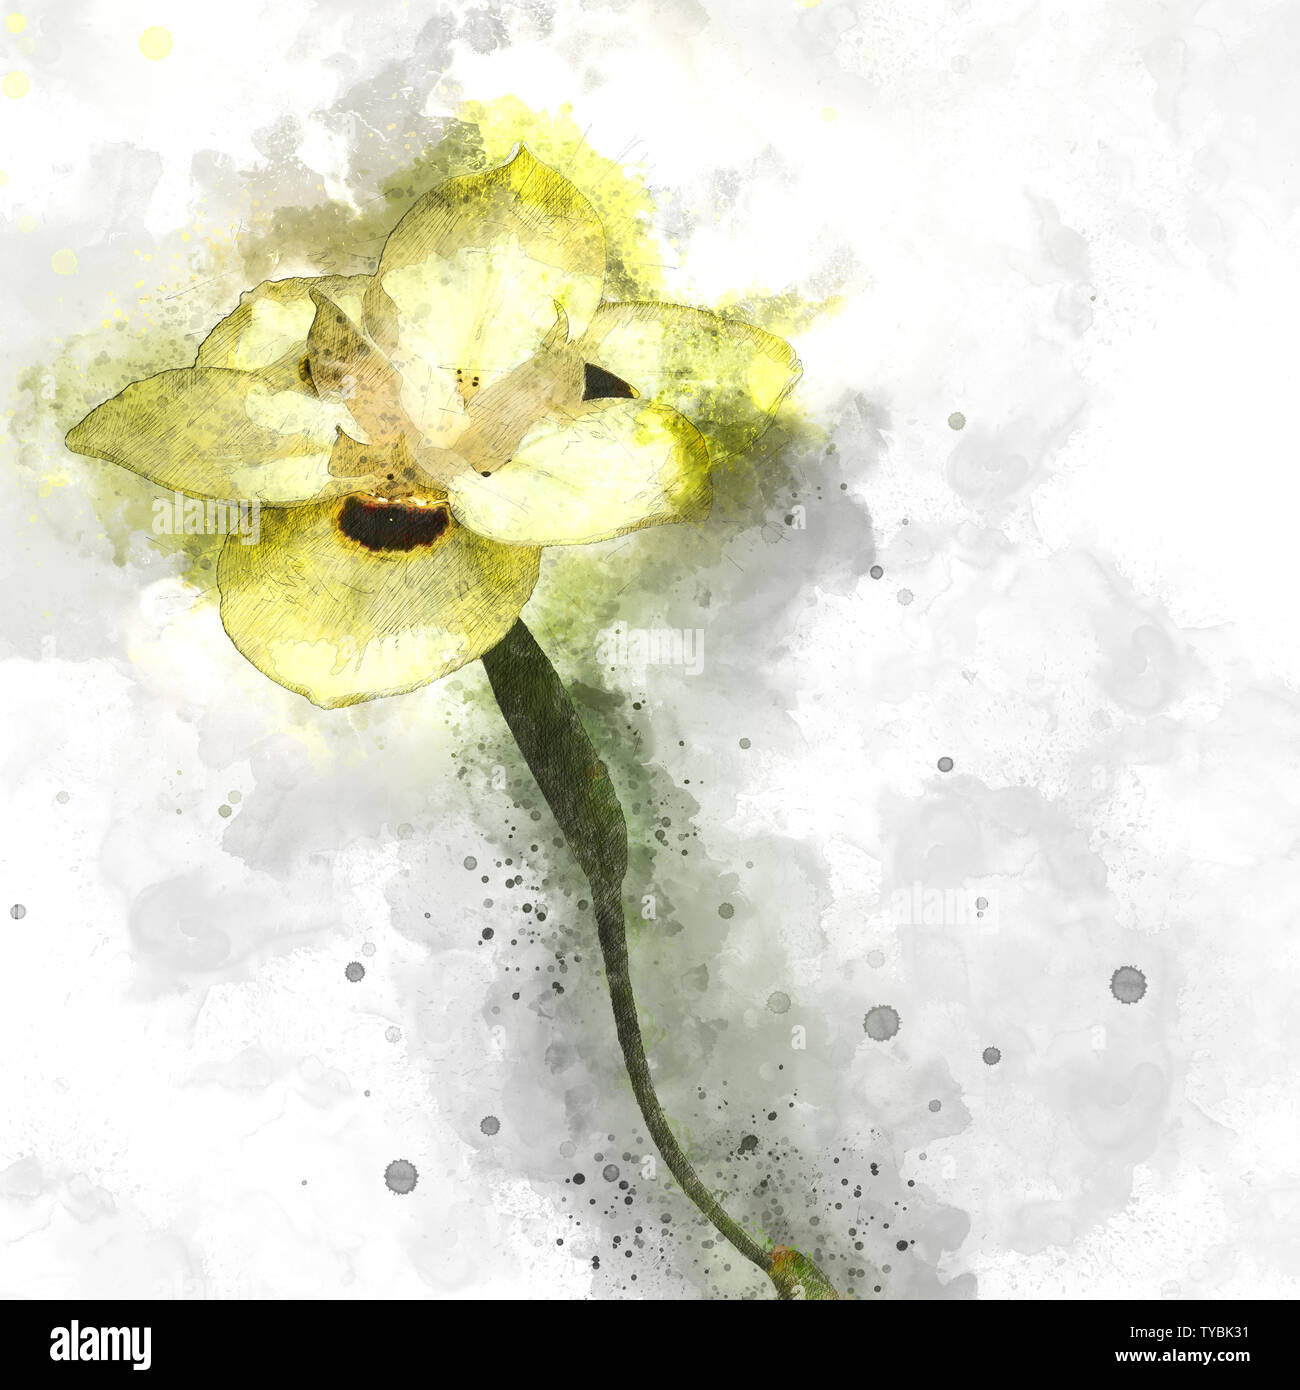 Digital verbesserte Bild Dietes bicolor (verschieden als afrikanische Iris oder vierzehn Tage lily bekannt) ist ein BÜSCHEL-forming Rhizomartige mehrjährige Pflanze mit langen s Stockfoto